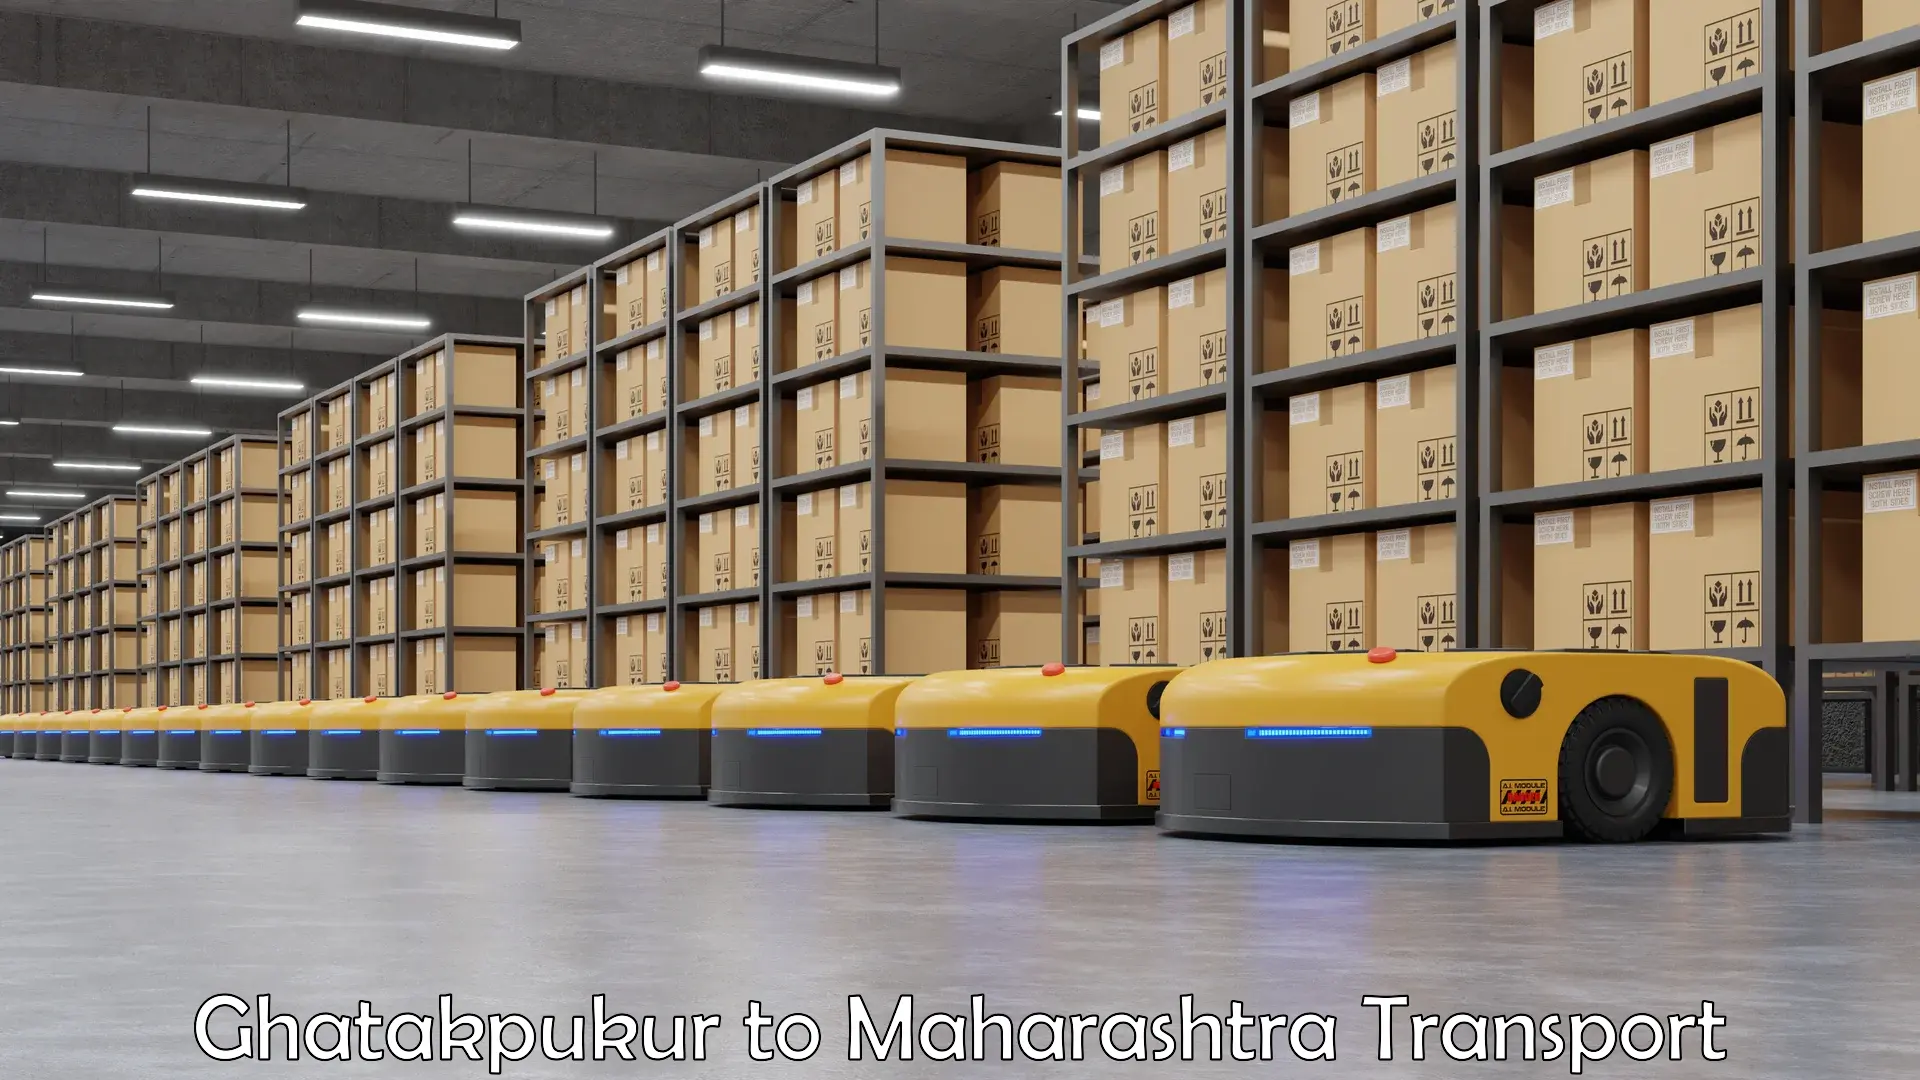 Furniture transport service Ghatakpukur to Mahur